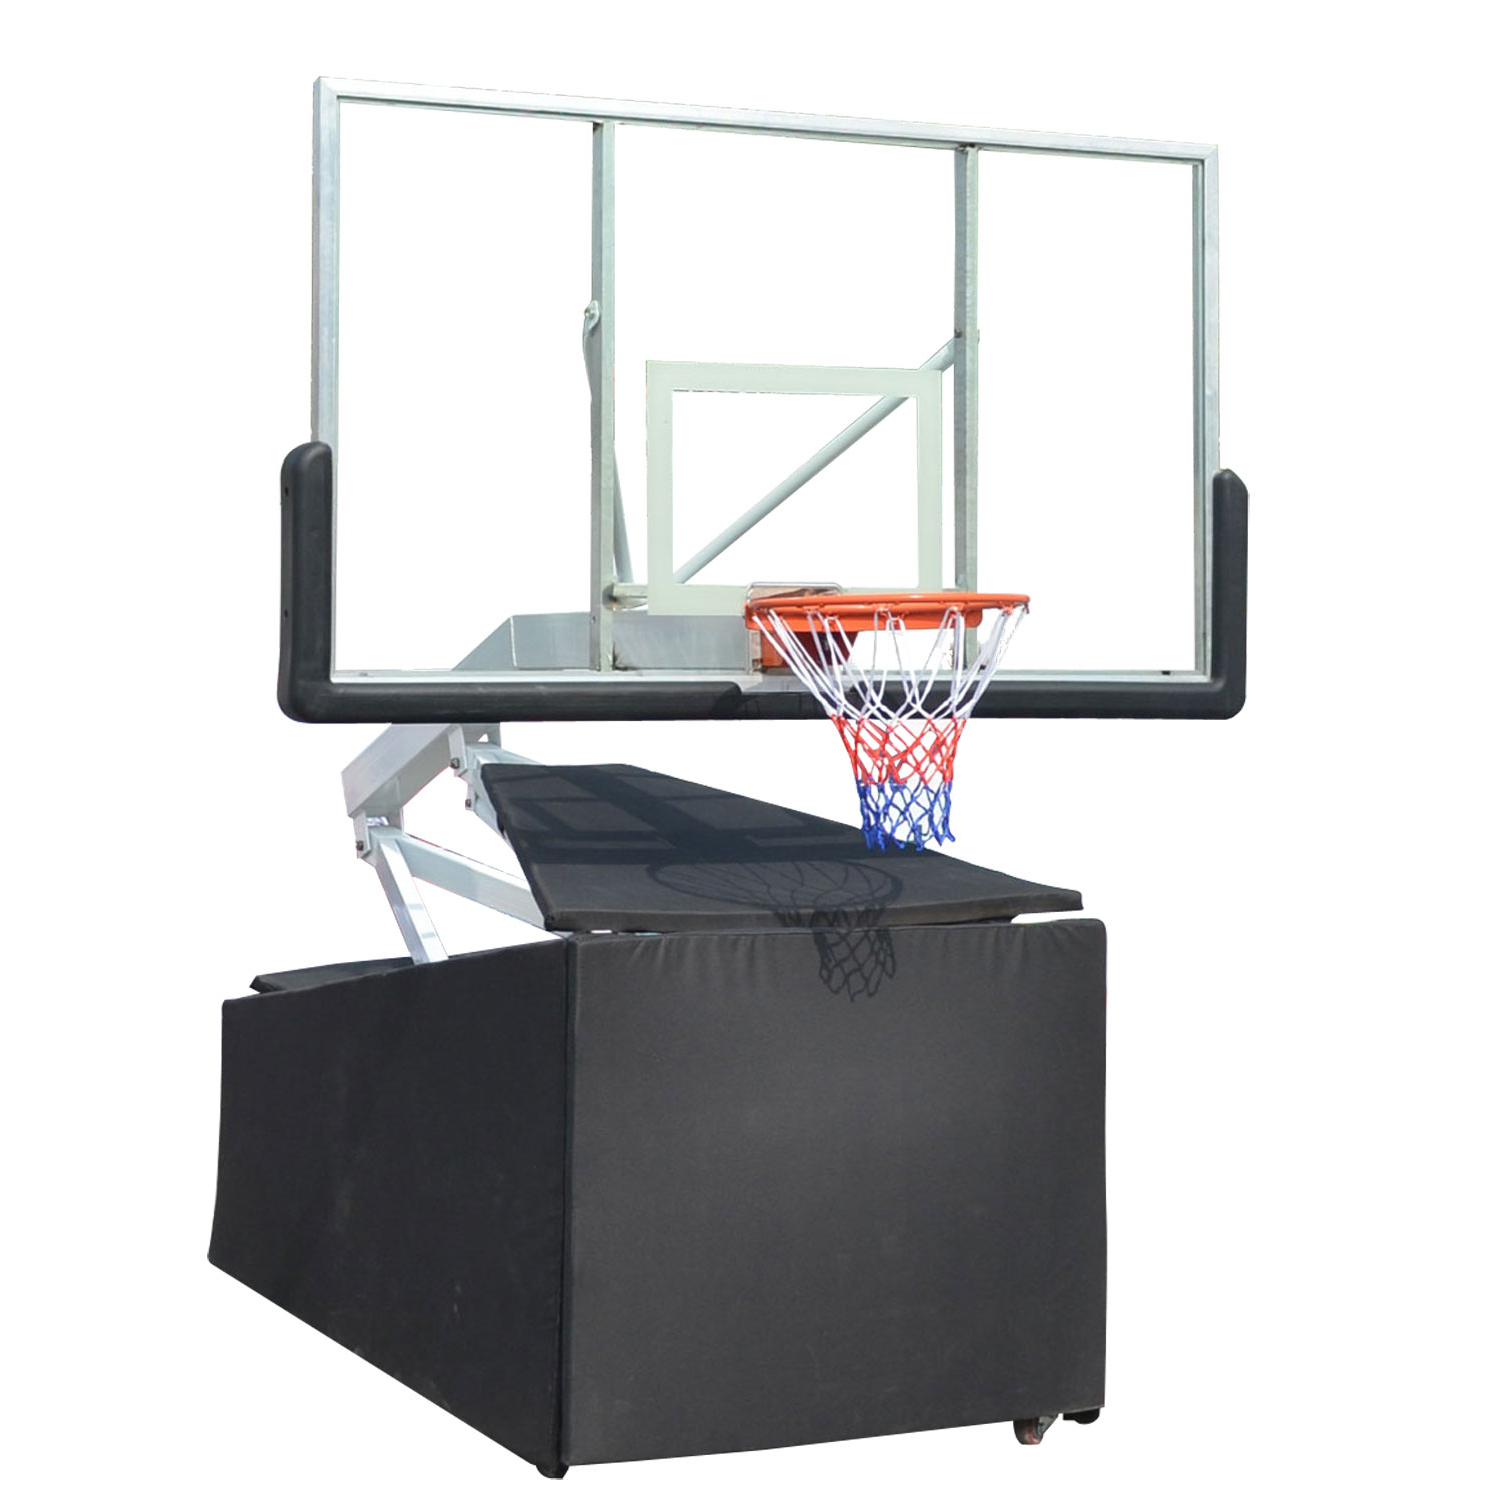 Мобильная баскетбольная стойка клубного уровня DFC STAND72G. Фото N3